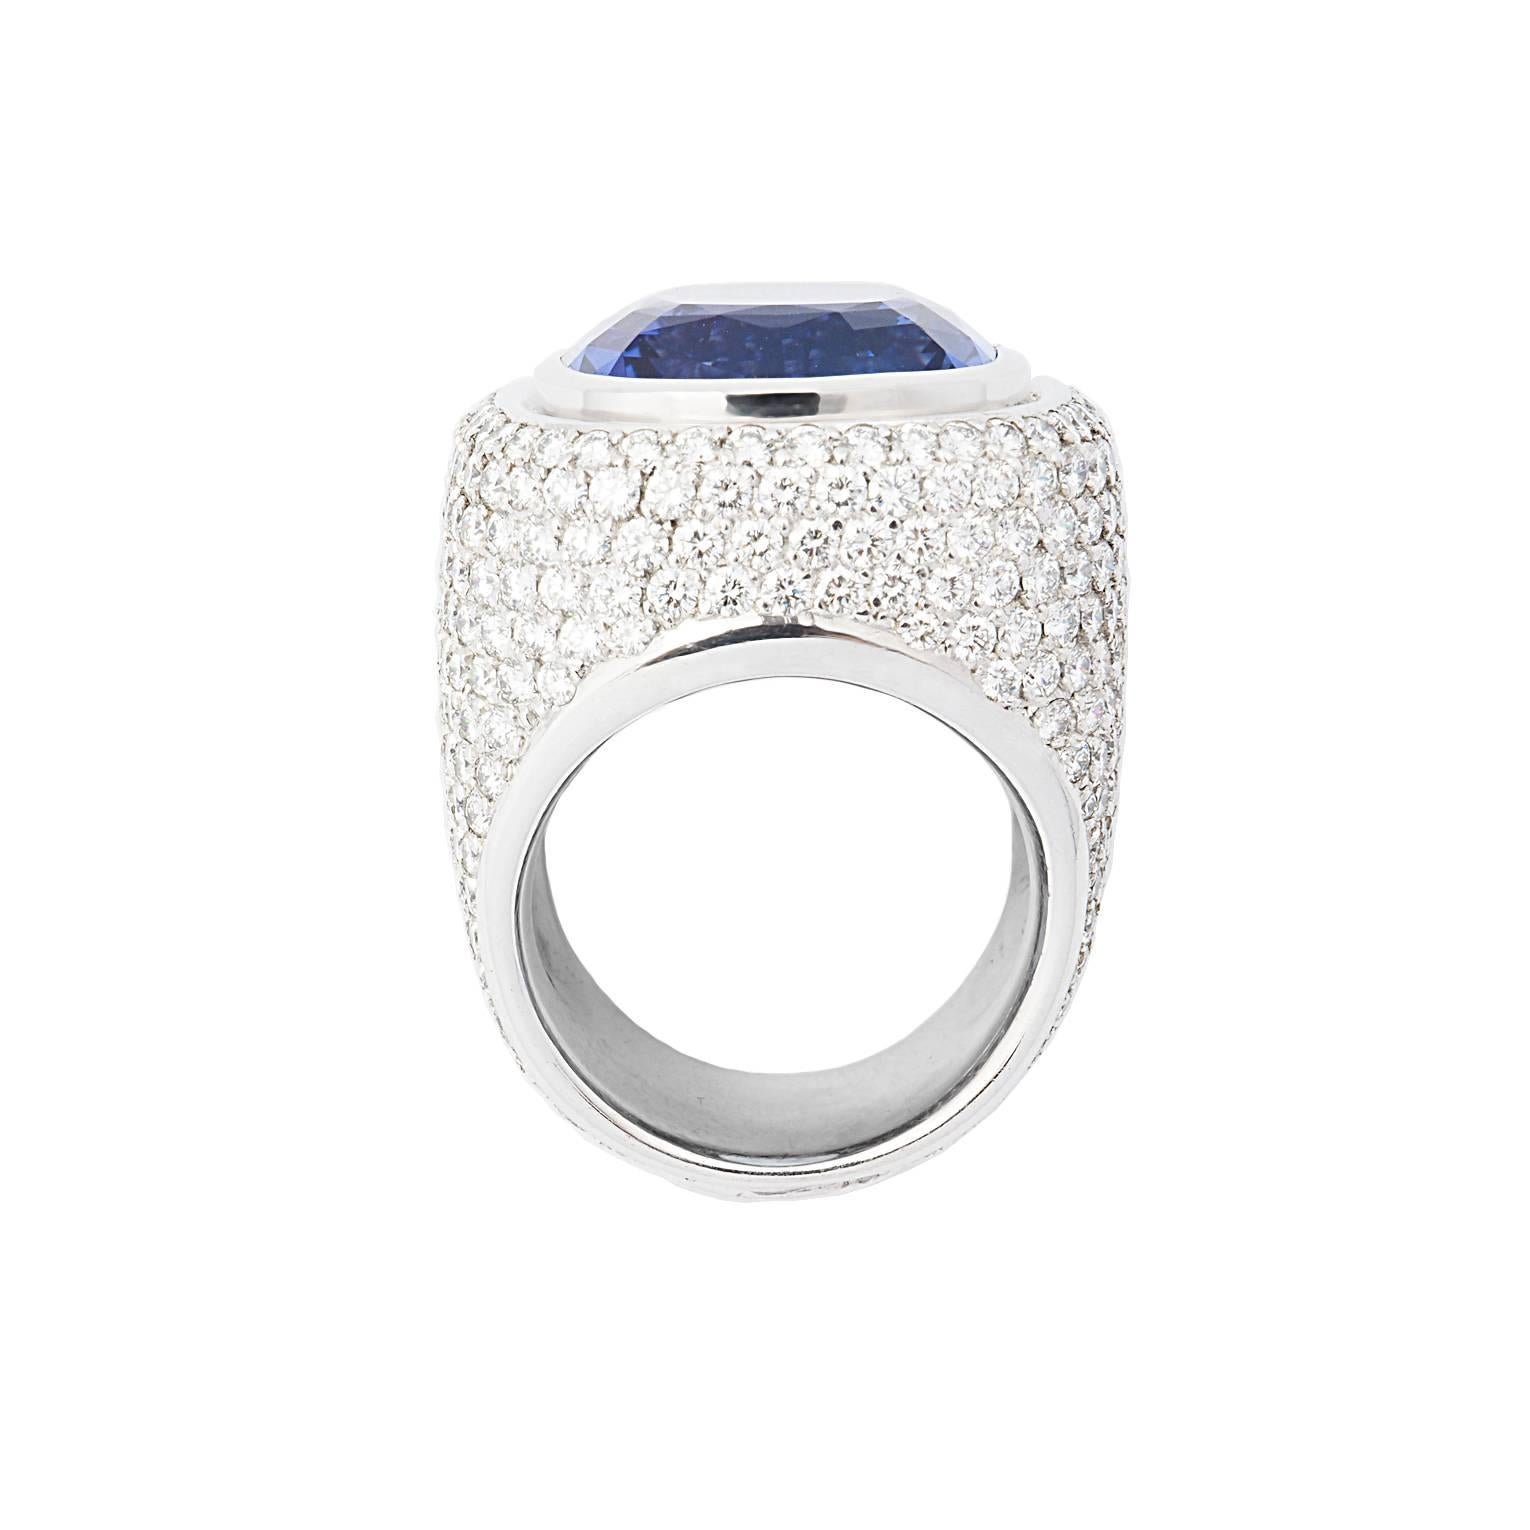 Der wunderschöne nachtblaue Tansanit von 22,35 ct und die Diamanten von 6,71 ct TW/if Brillantschliff machen diesen Ring zu einem beeindruckenden Blickfang. Ringgröße: 56
Entworfen von Colleen B. Rosenblat
